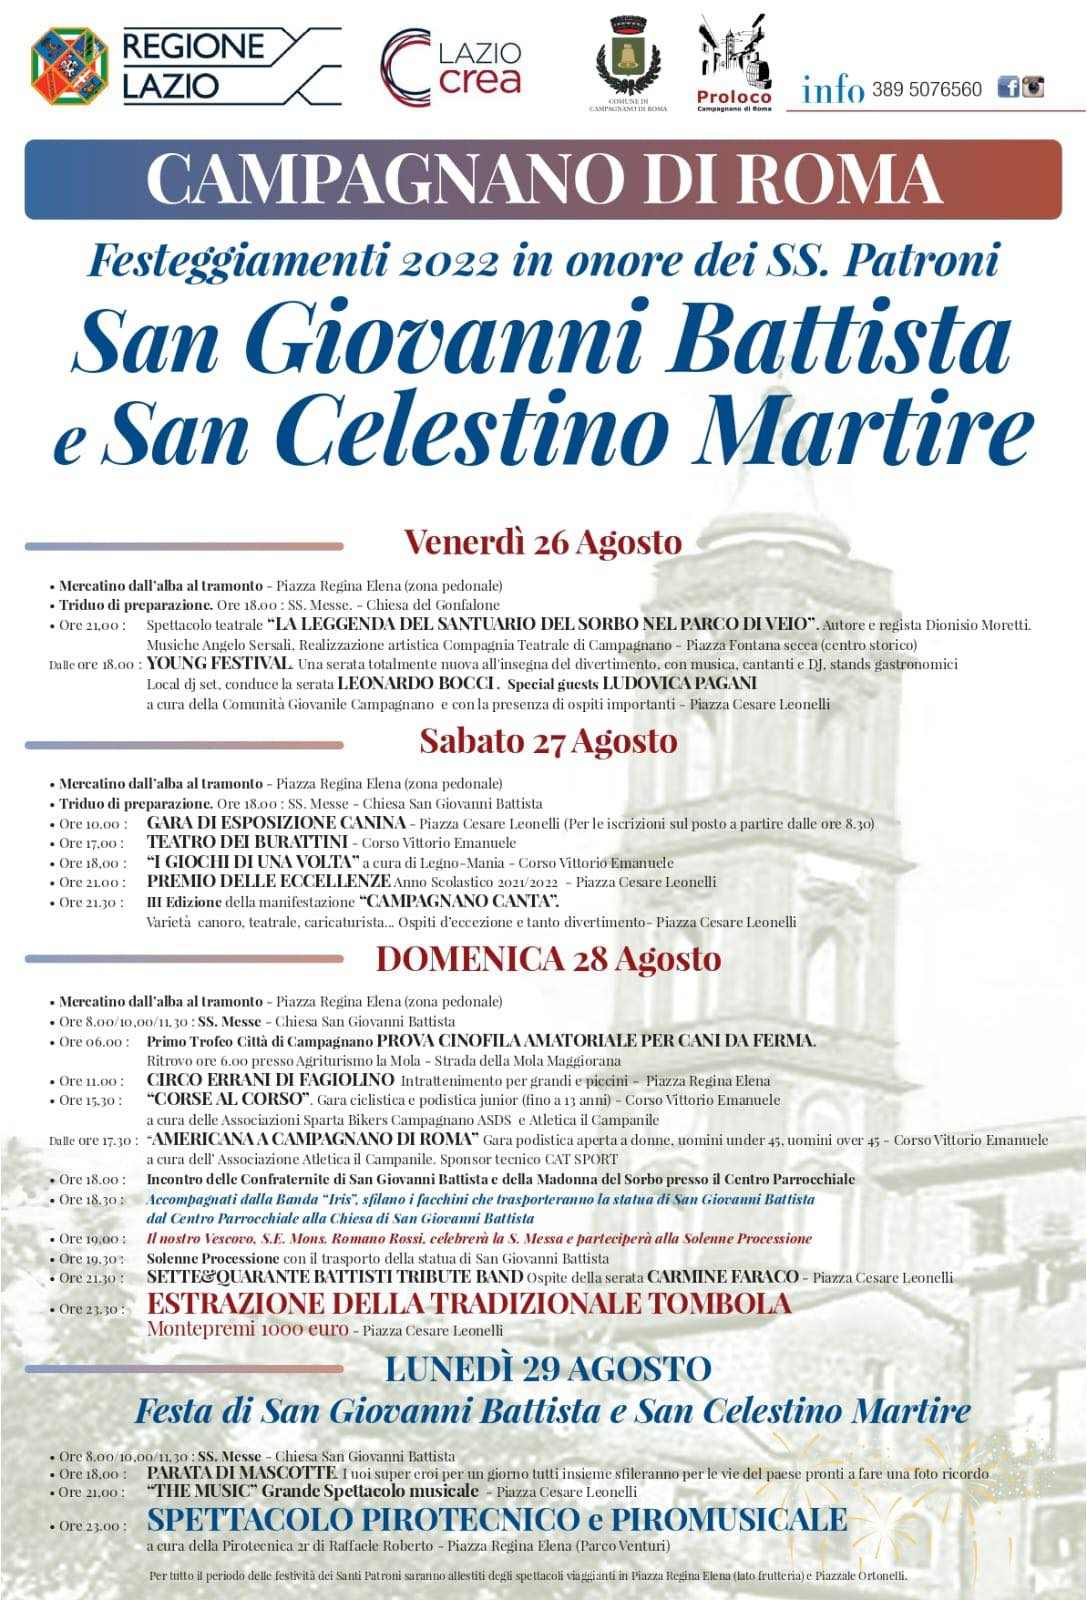 Campagnano di Roma (RM)
"Festeggiamenti in onore di
San Giovanni Battista 
e San Celestino Martire"
dal 26 al 29 Agosto 2022